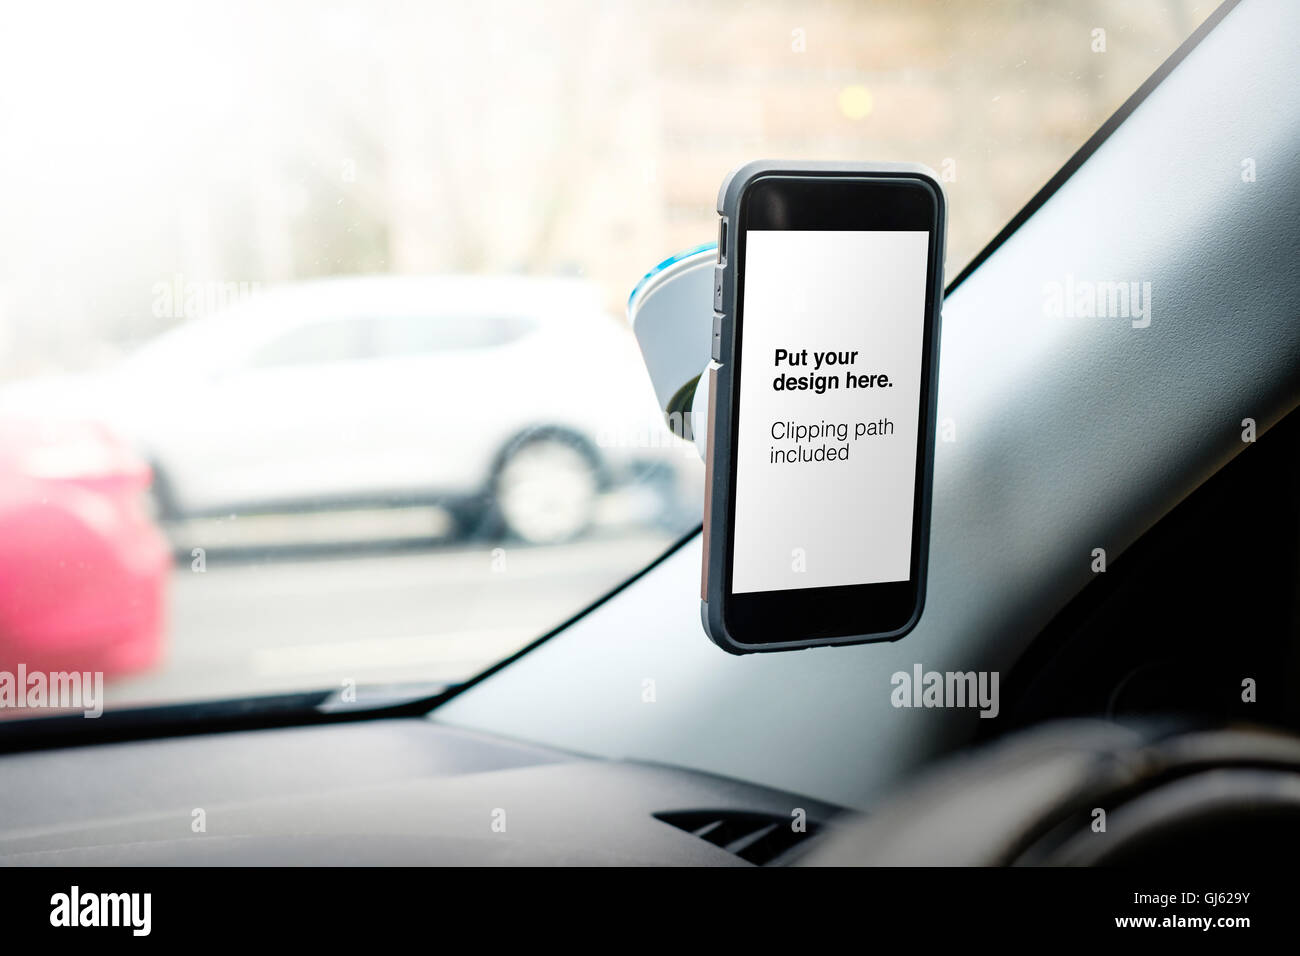 Photo de téléphone intelligent dans la voiture, chemin de détourage inclus votre design ou d'art Banque D'Images